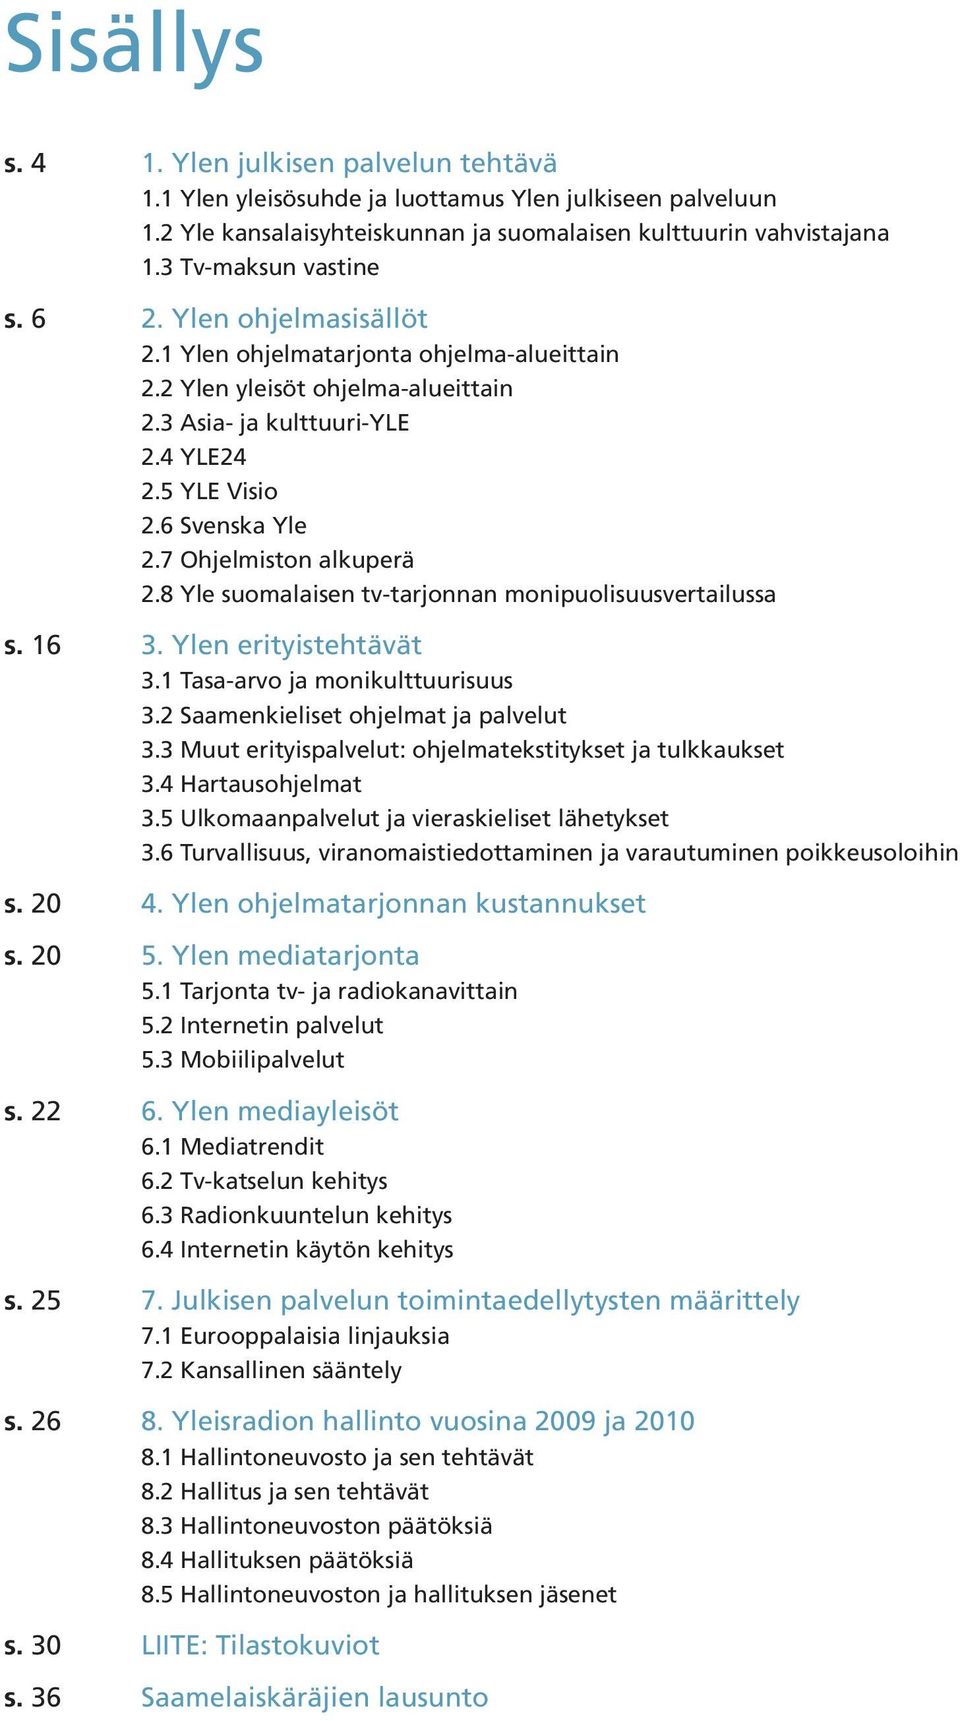 8 Yle suomalaisen tv-tarjonnan monipuolisuusvertailussa s. 16 3. Ylen erityistehtävät 3.1 Tasa-arvo ja monikulttuurisuus 3.2 Saamenkieliset ohjelmat ja palvelut 3.